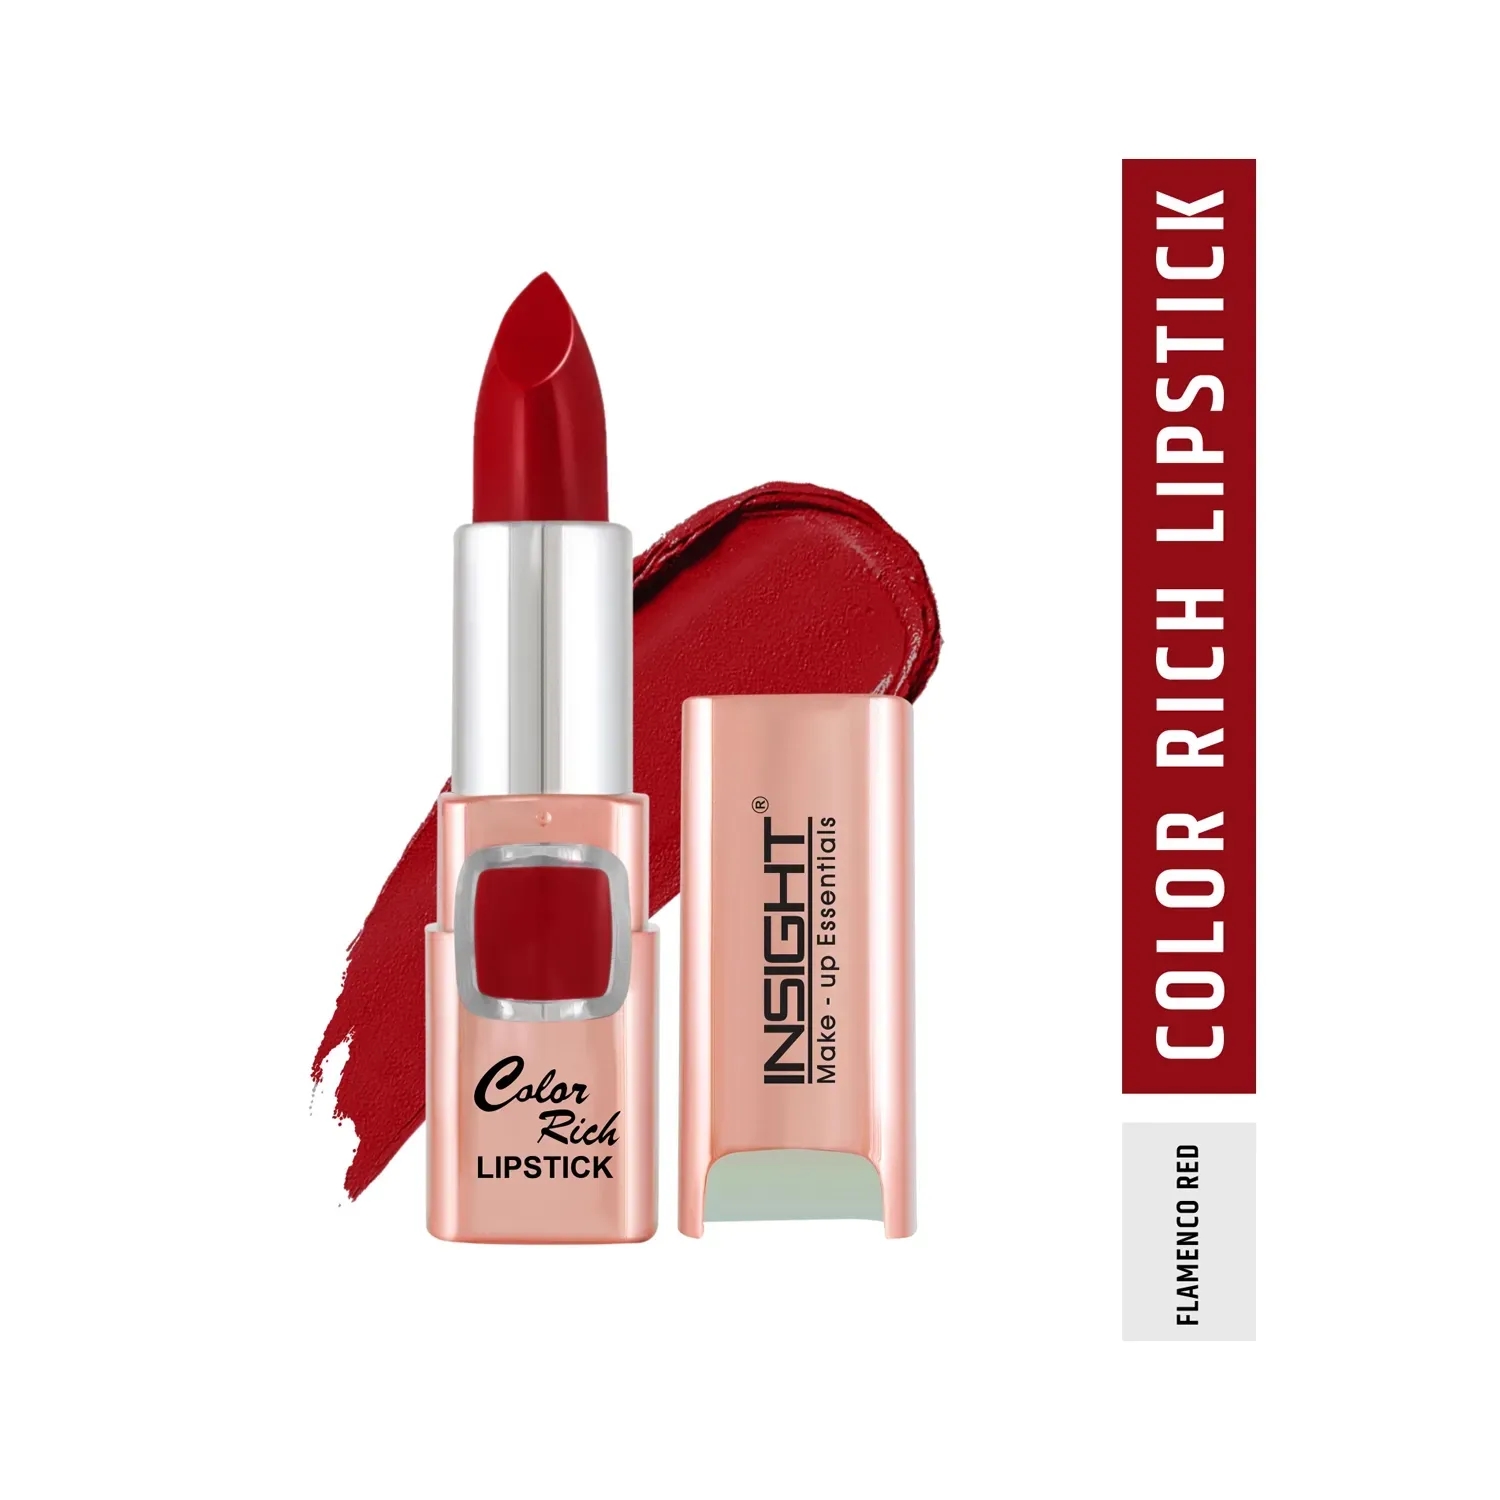 Insight Cosmetics | Insight Cosmetics Color Rich Lipstick - Flamenco Red (4.2g)